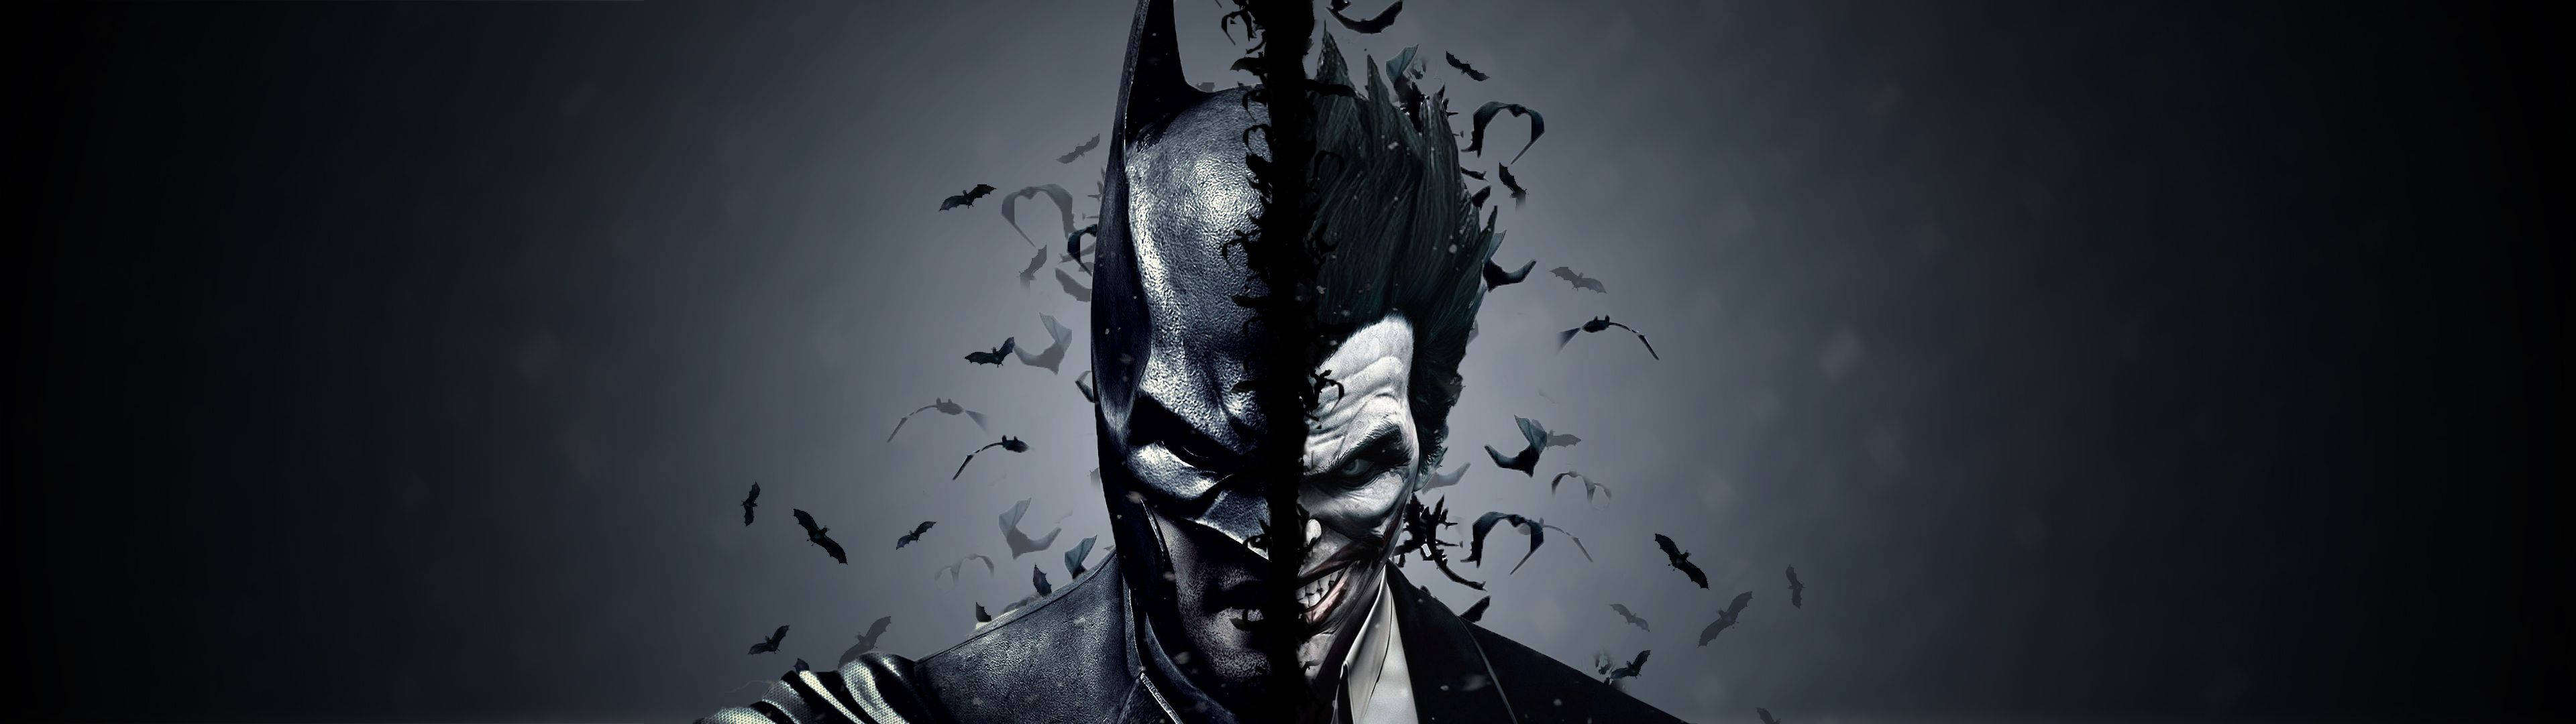 Batman & Joker Face Off Background